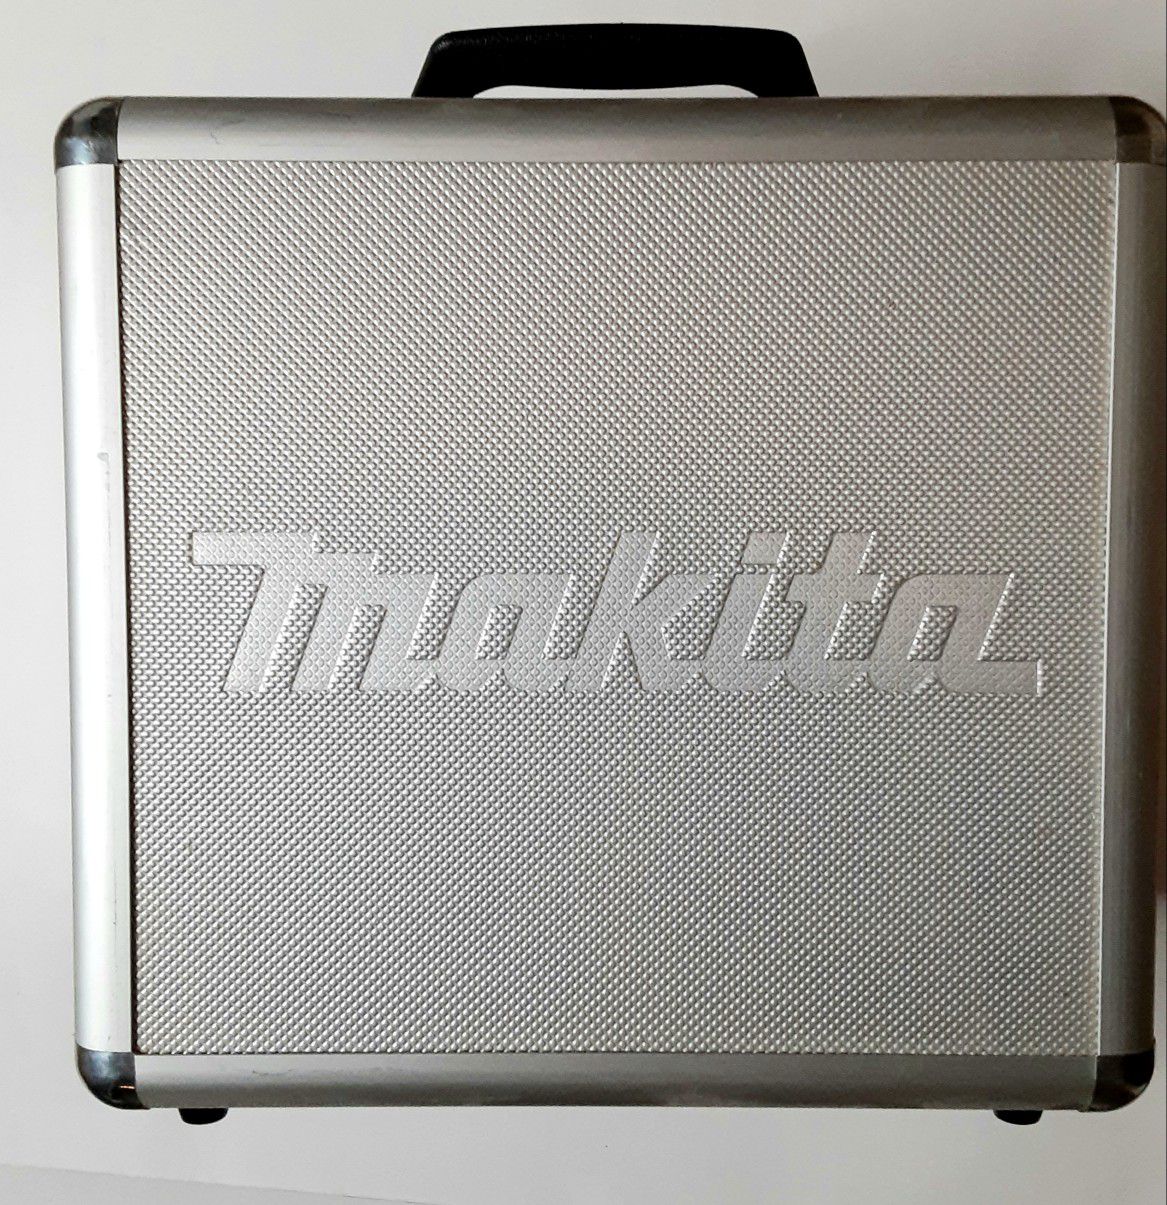 Makita Drill Worklight Metal Tool Case 12v Max